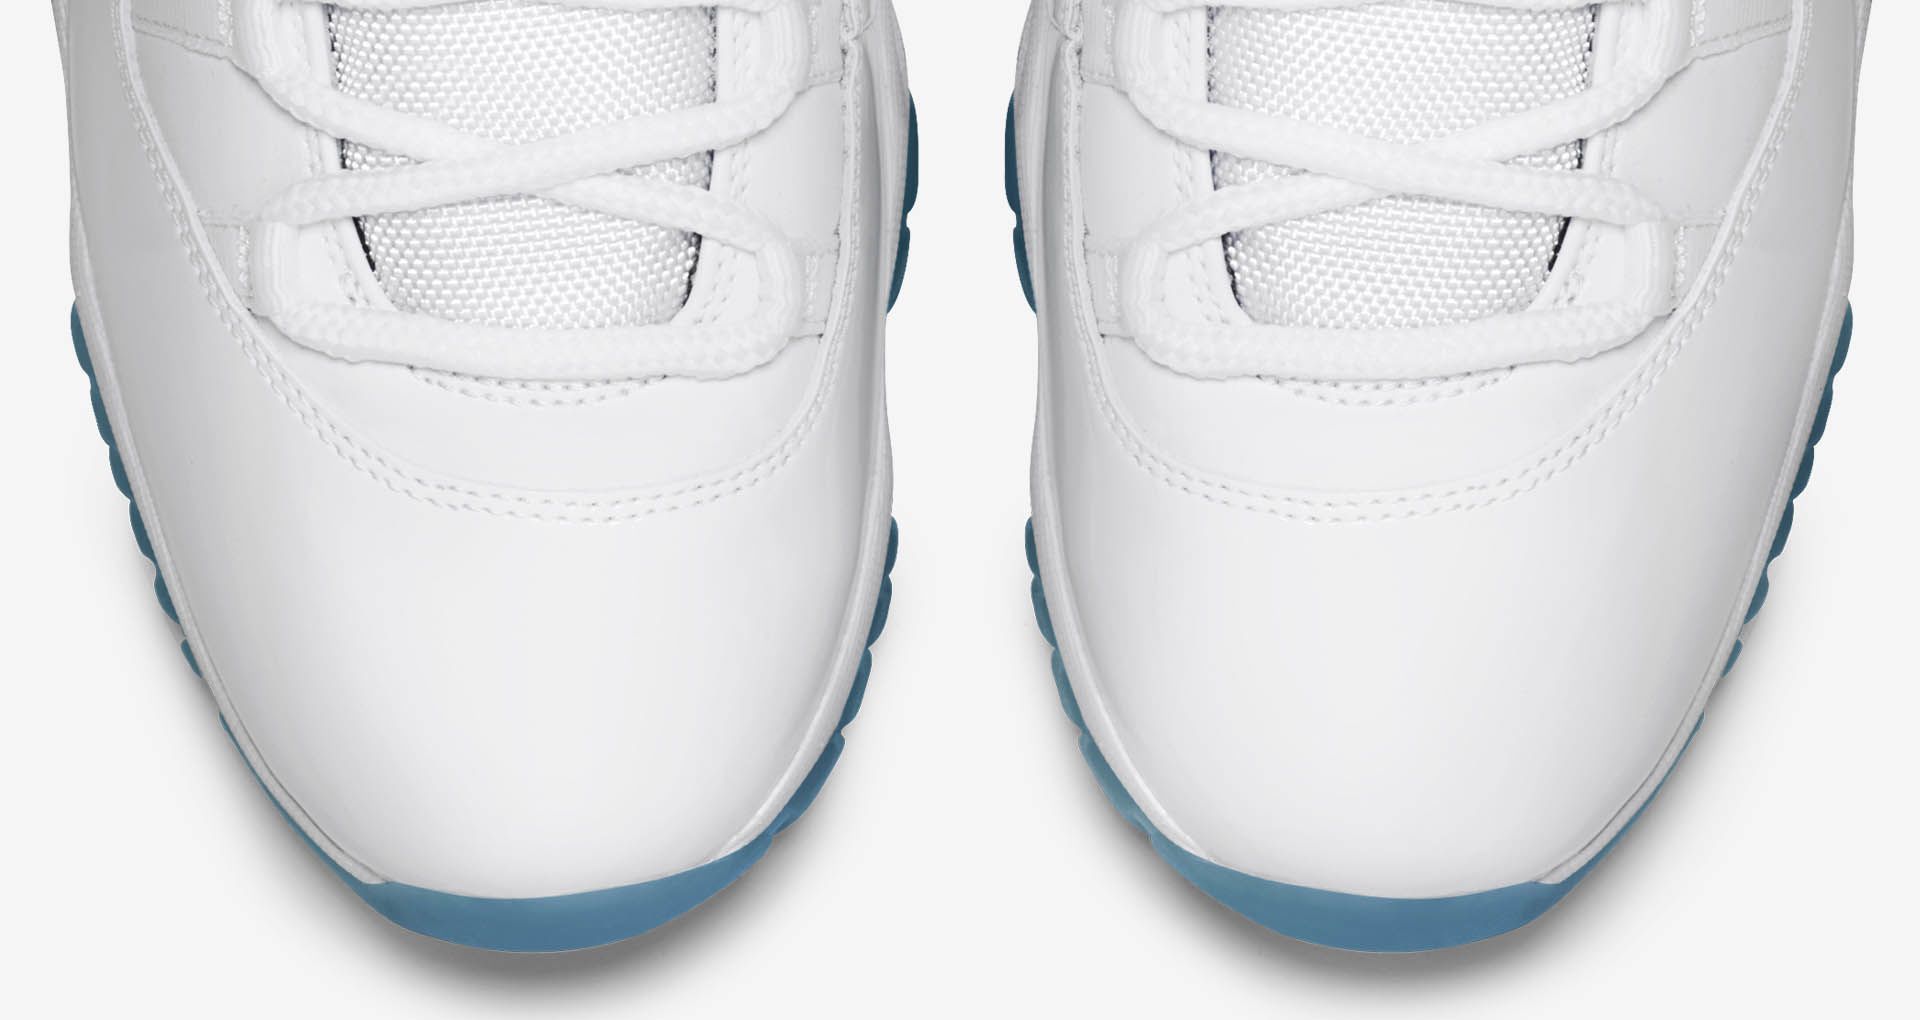 エア ジョーダン 11 レトロ ‘LEGEND BLUE’の発売日. Nike SNKRS JP